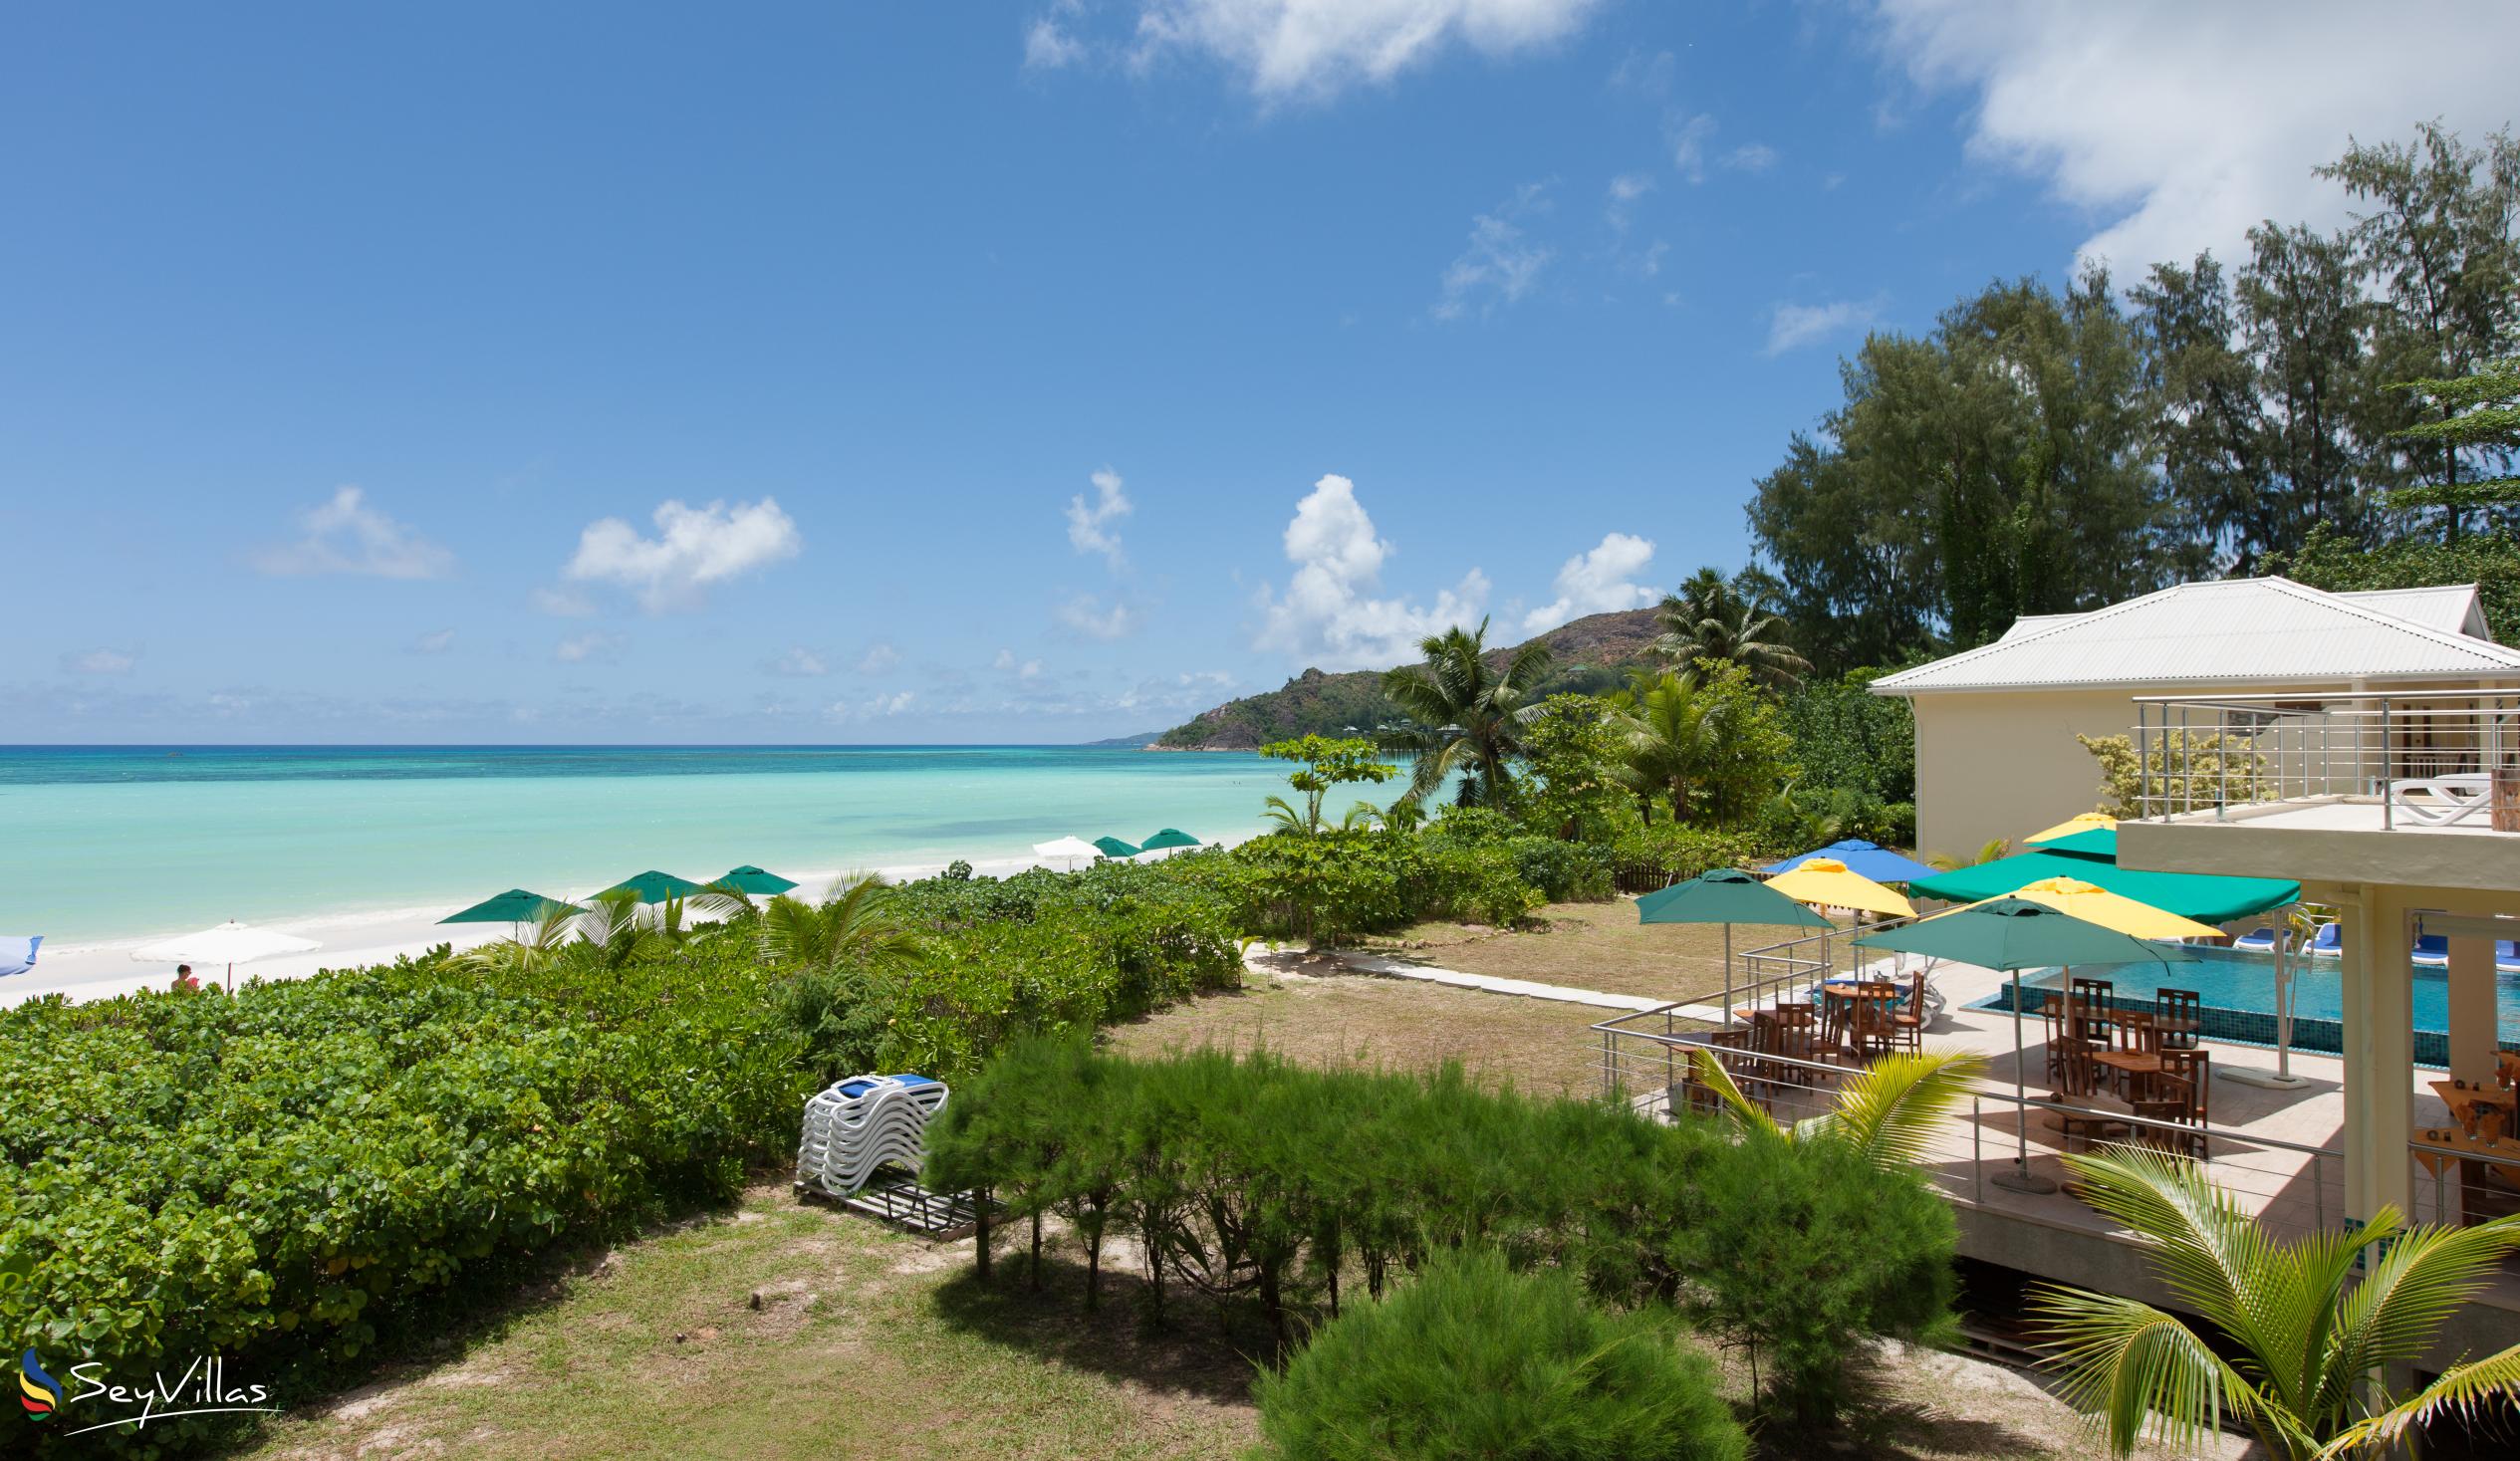 Foto 1: Acajou Beach Resort - Aussenbereich - Praslin (Seychellen)